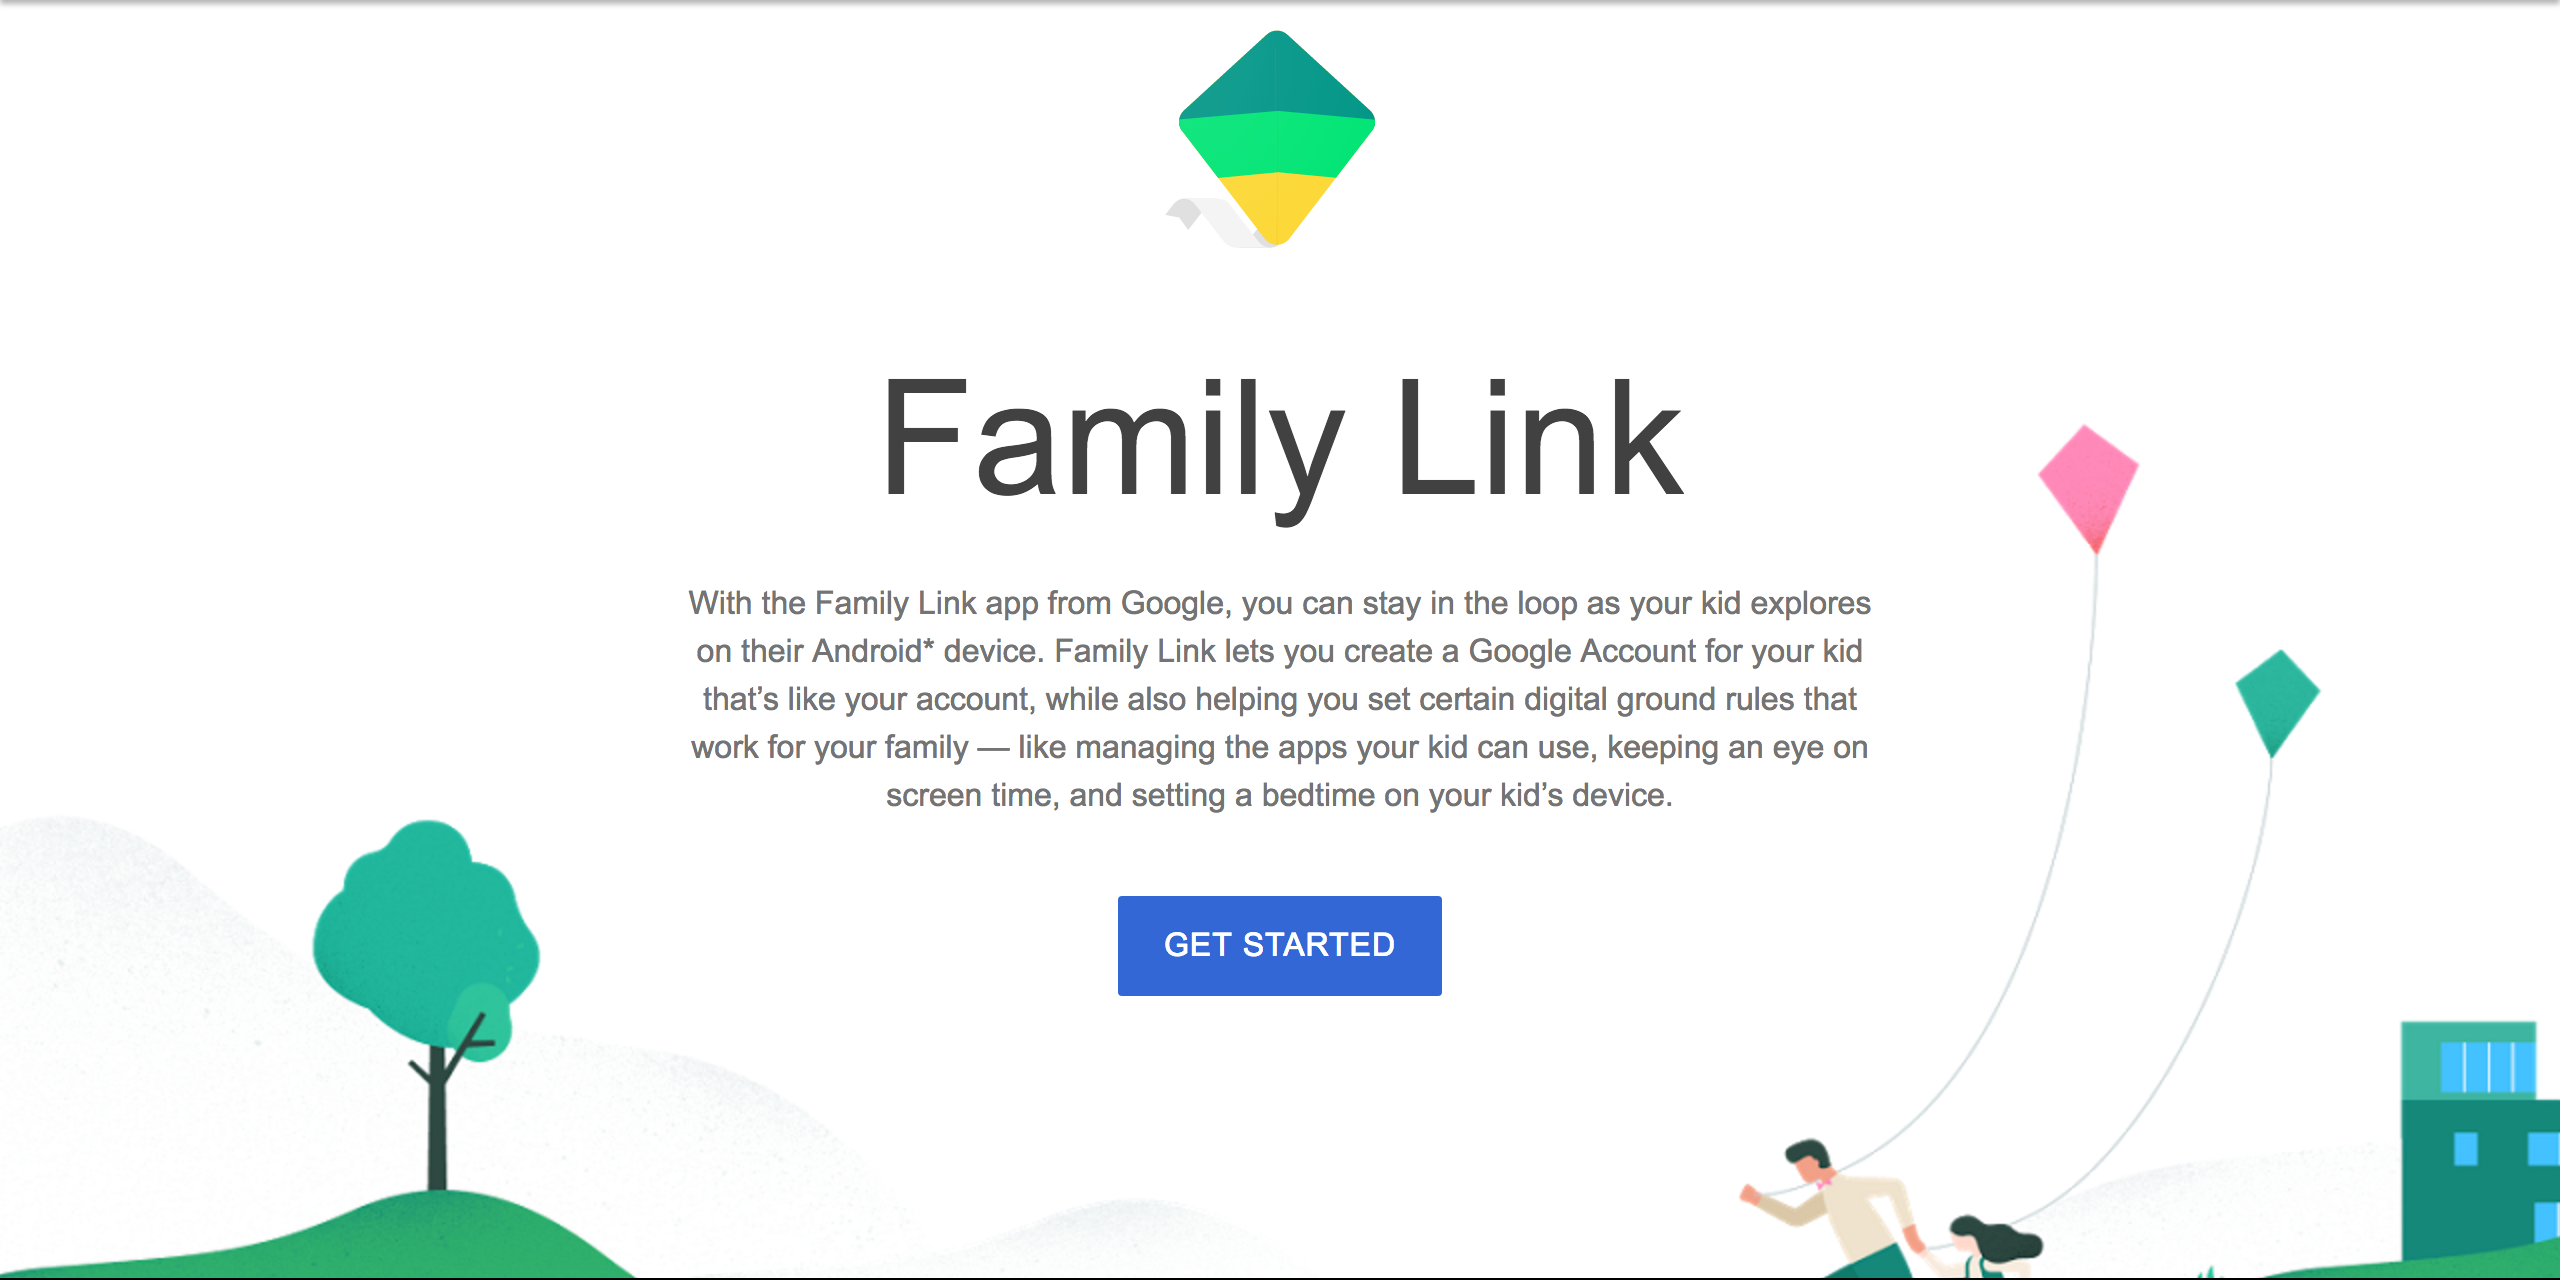 Family Link controle da famíl. – Apps no Google Play